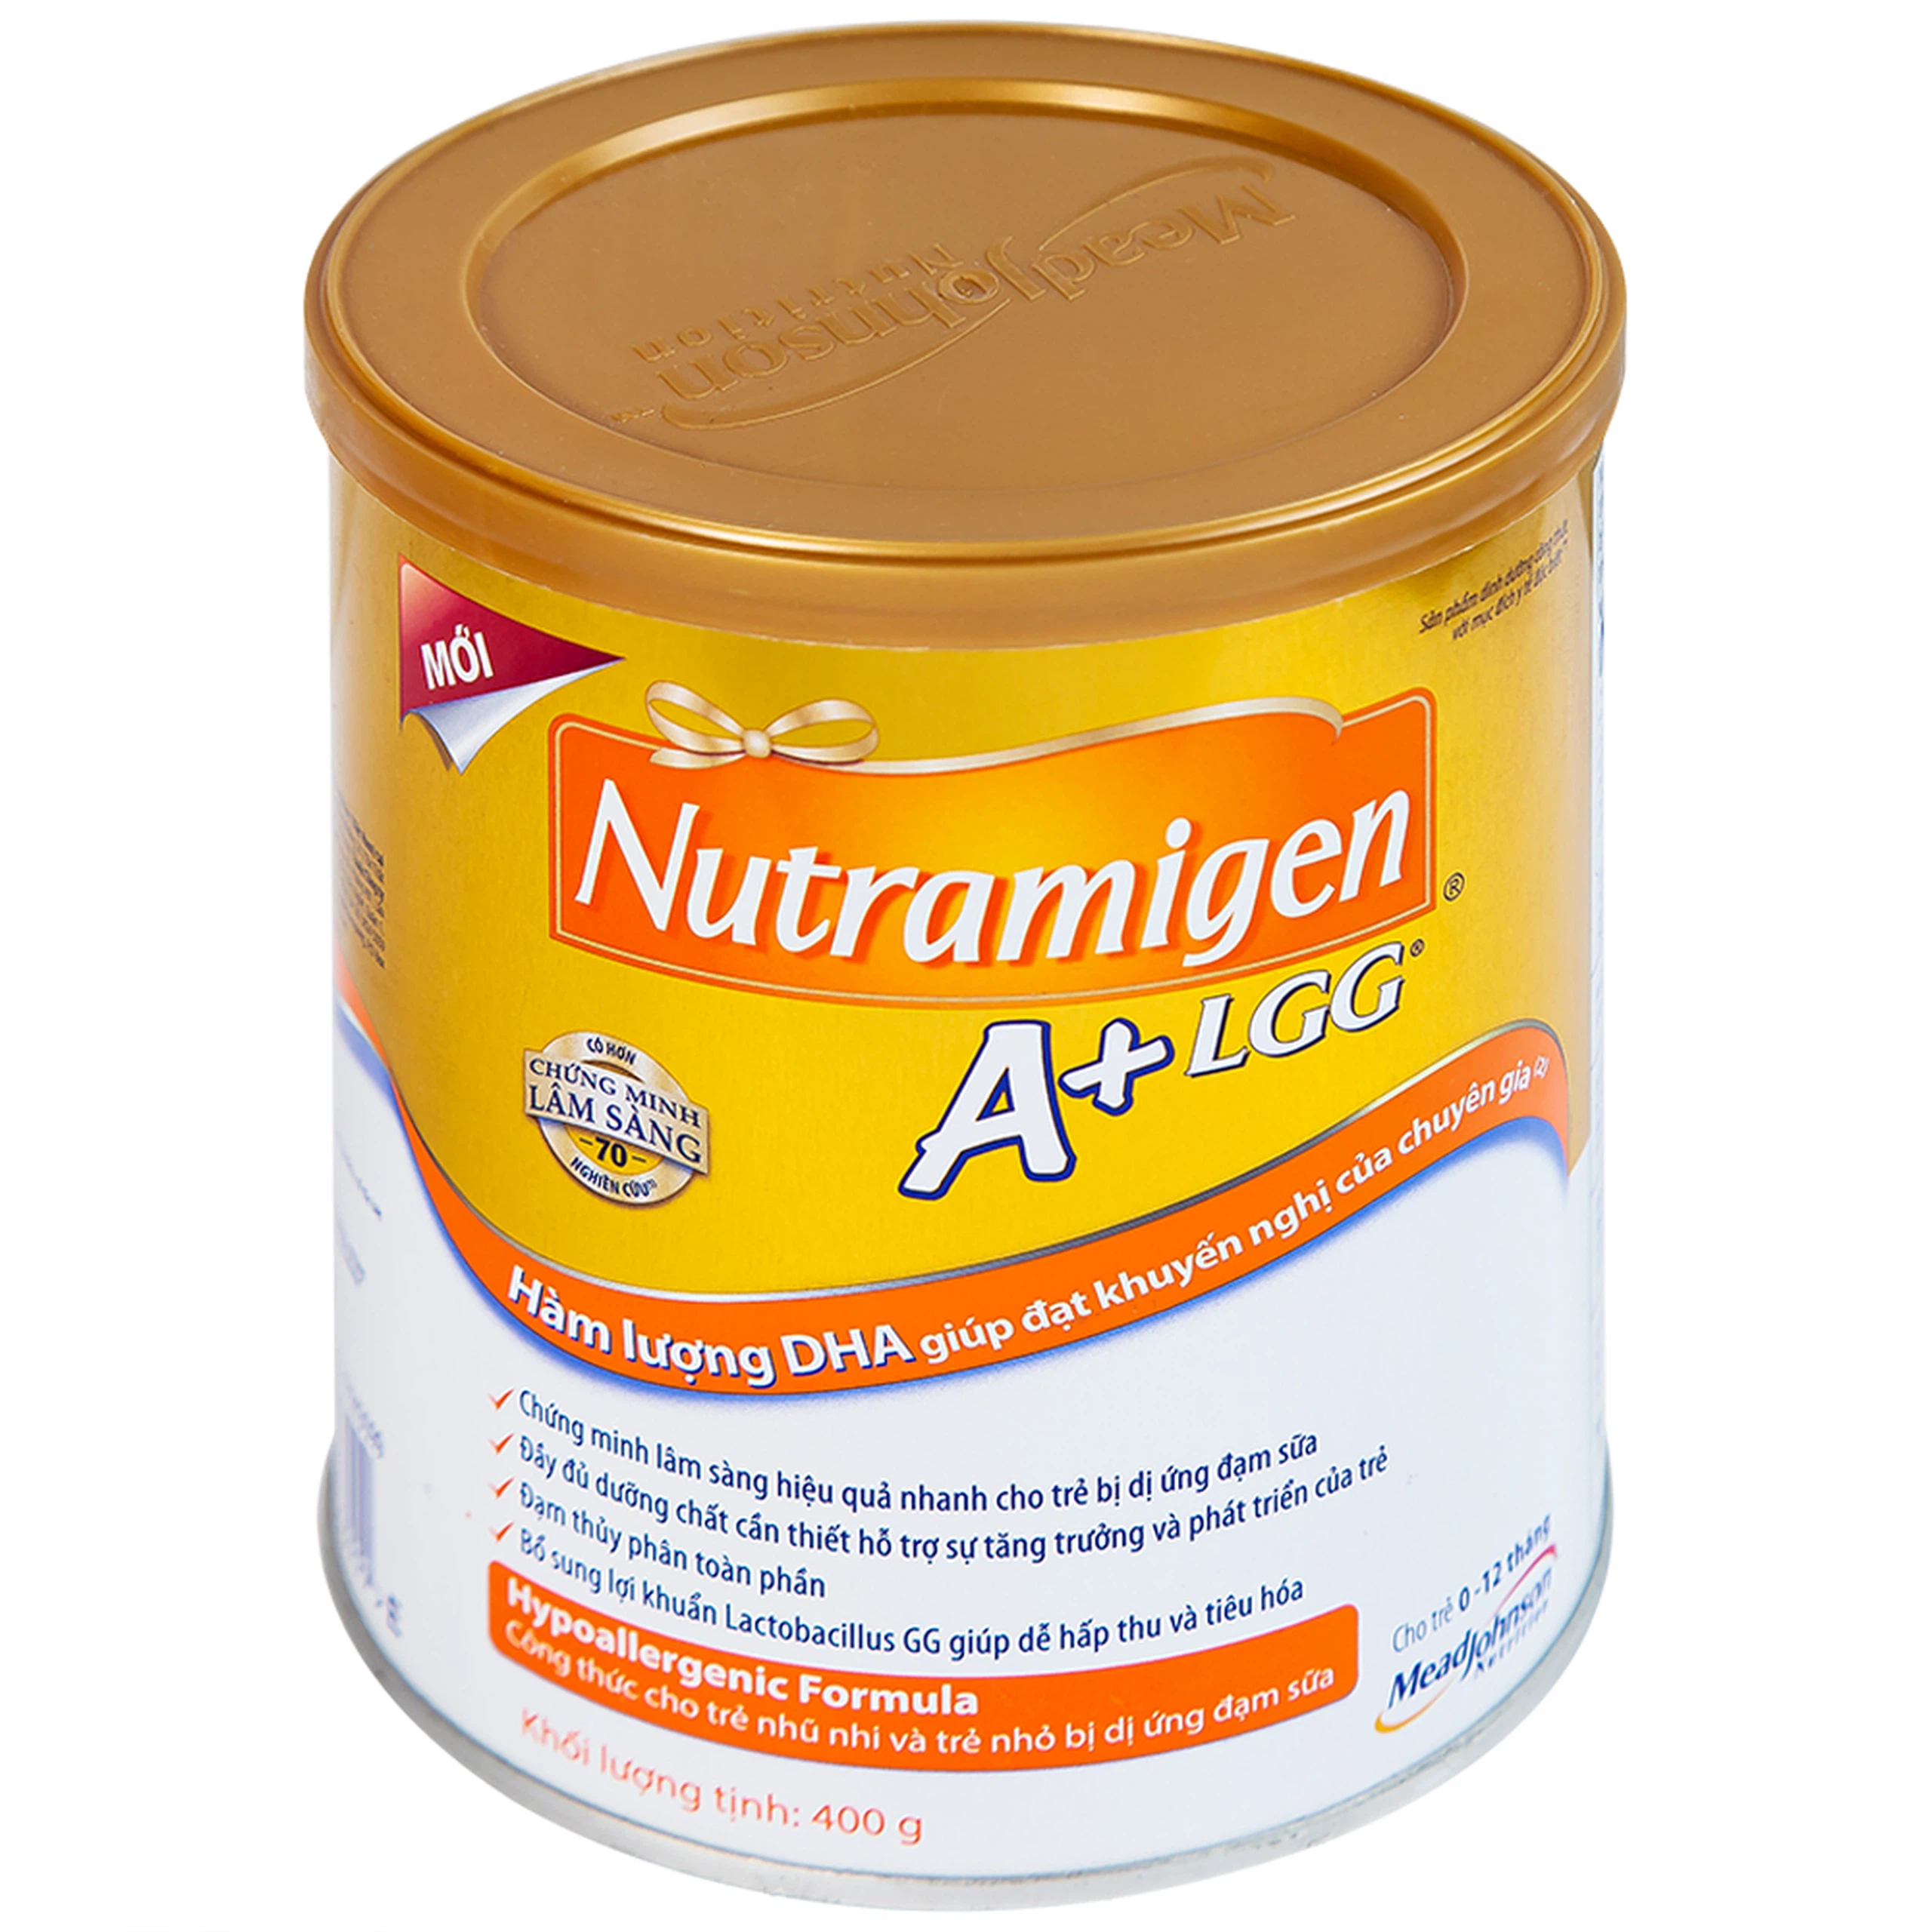 Sữa Nutramigen A+ LGG Mead Johnson bổ sung dinh dưỡng cho trẻ dị ứng với đạm sữa (400g)